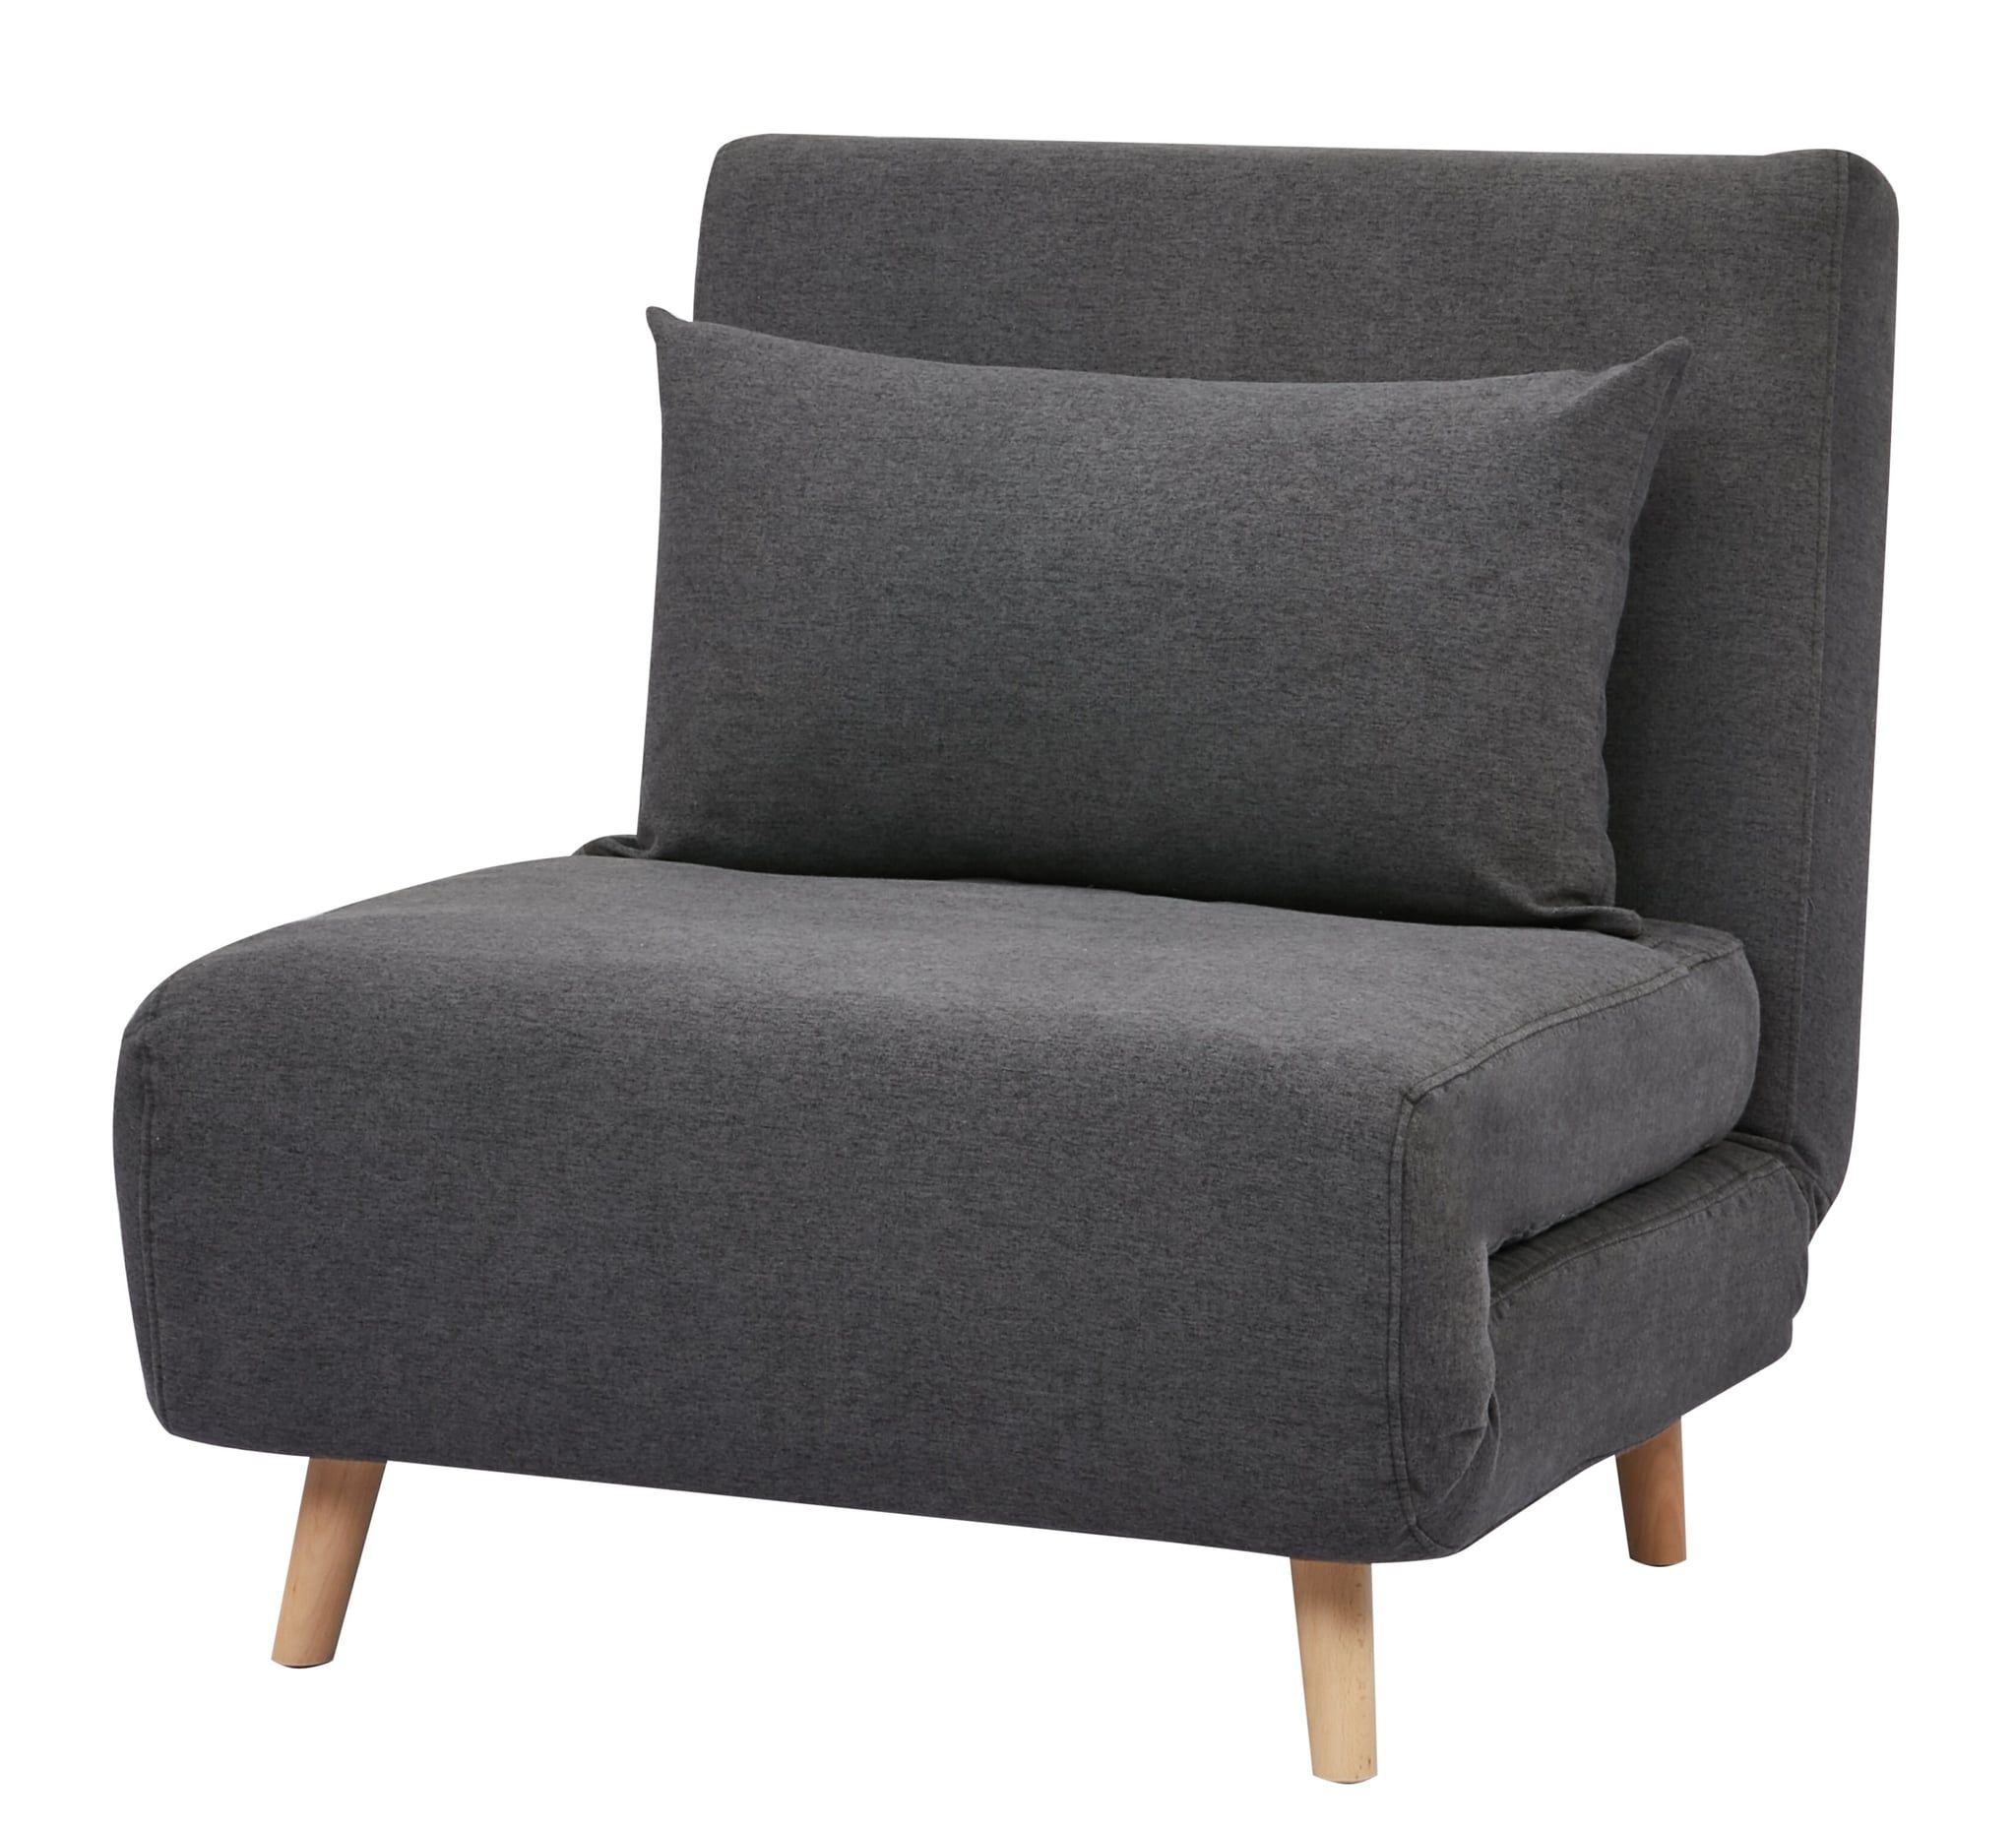 Bolen Convertible Chair | 34 Stunning Furniture Pieces I Can Throughout Bolen Convertible Chairs (Photo 3 of 15)